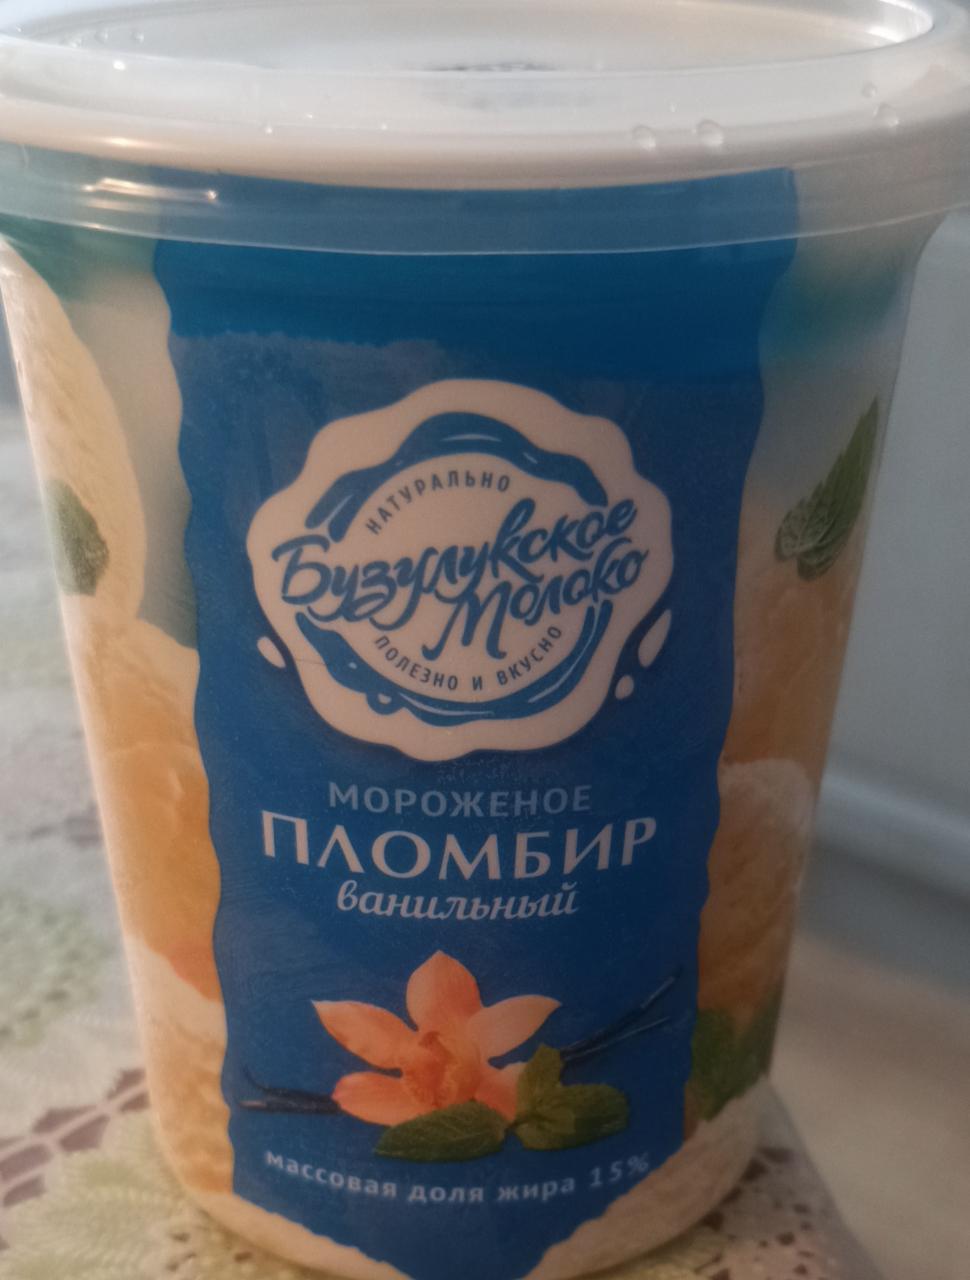 Фото - Мороженое пломбир ванильный Массовая доля жира 15% Бузулукское молоко